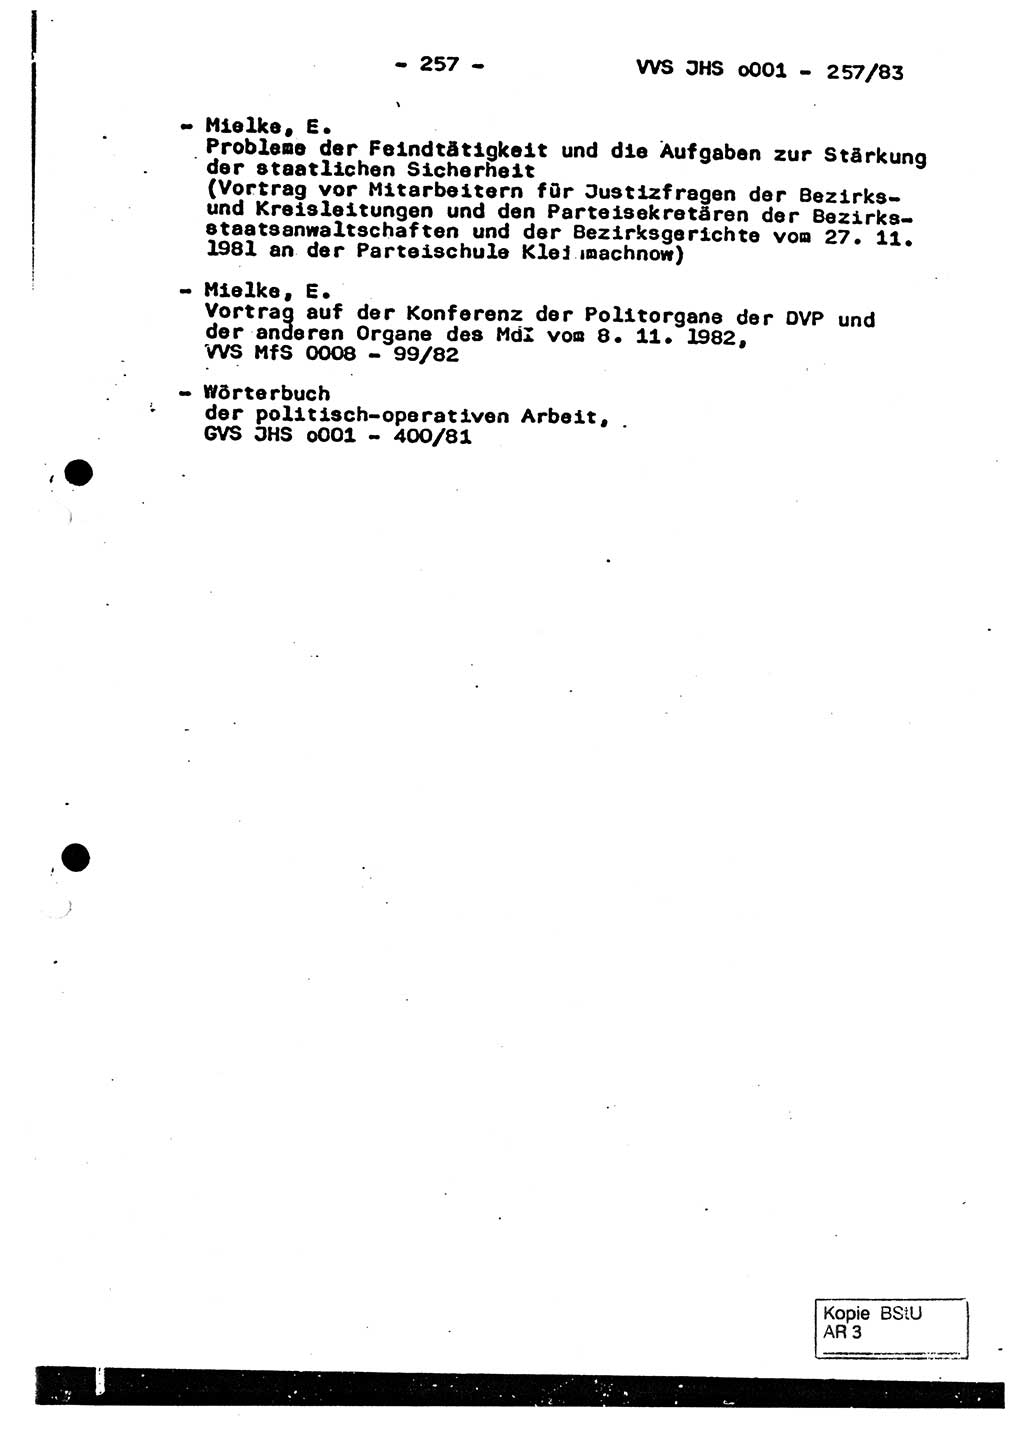 Dissertation, Oberst Helmut Lubas (BV Mdg.), Oberstleutnant Manfred Eschberger (HA IX), Oberleutnant Hans-Jürgen Ludwig (JHS), Ministerium für Staatssicherheit (MfS) [Deutsche Demokratische Republik (DDR)], Juristische Hochschule (JHS), Vertrauliche Verschlußsache (VVS) o001-257/83, Potsdam 1983, Seite 257 (Diss. MfS DDR JHS VVS o001-257/83 1983, S. 257)